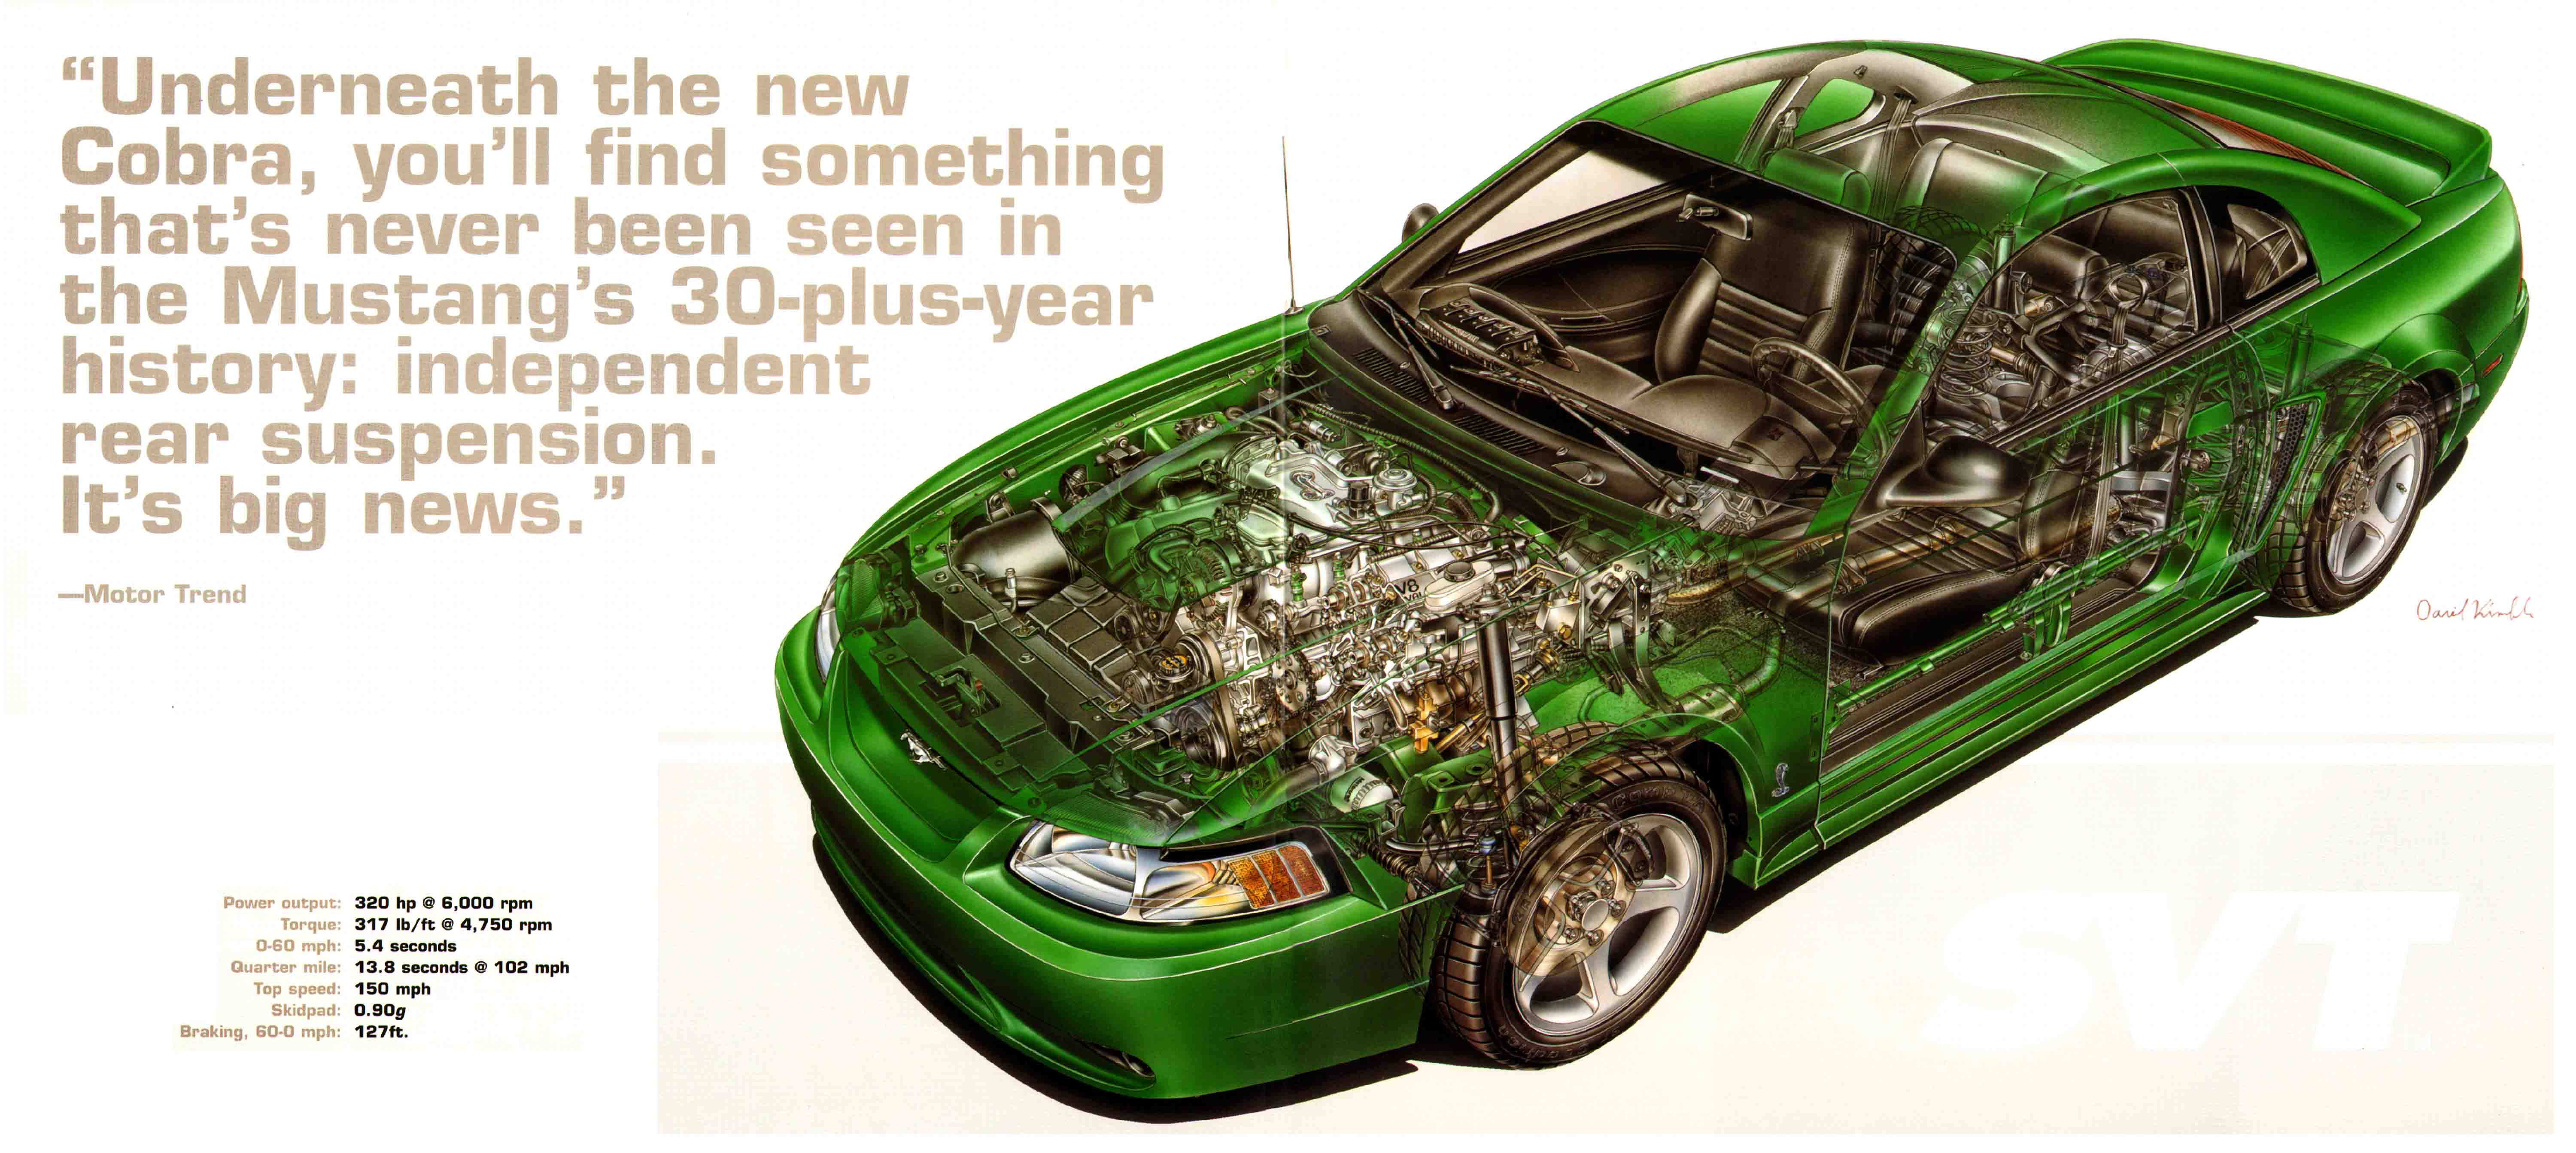 1999_Ford_SVT_Mustang_Cobra-10-11